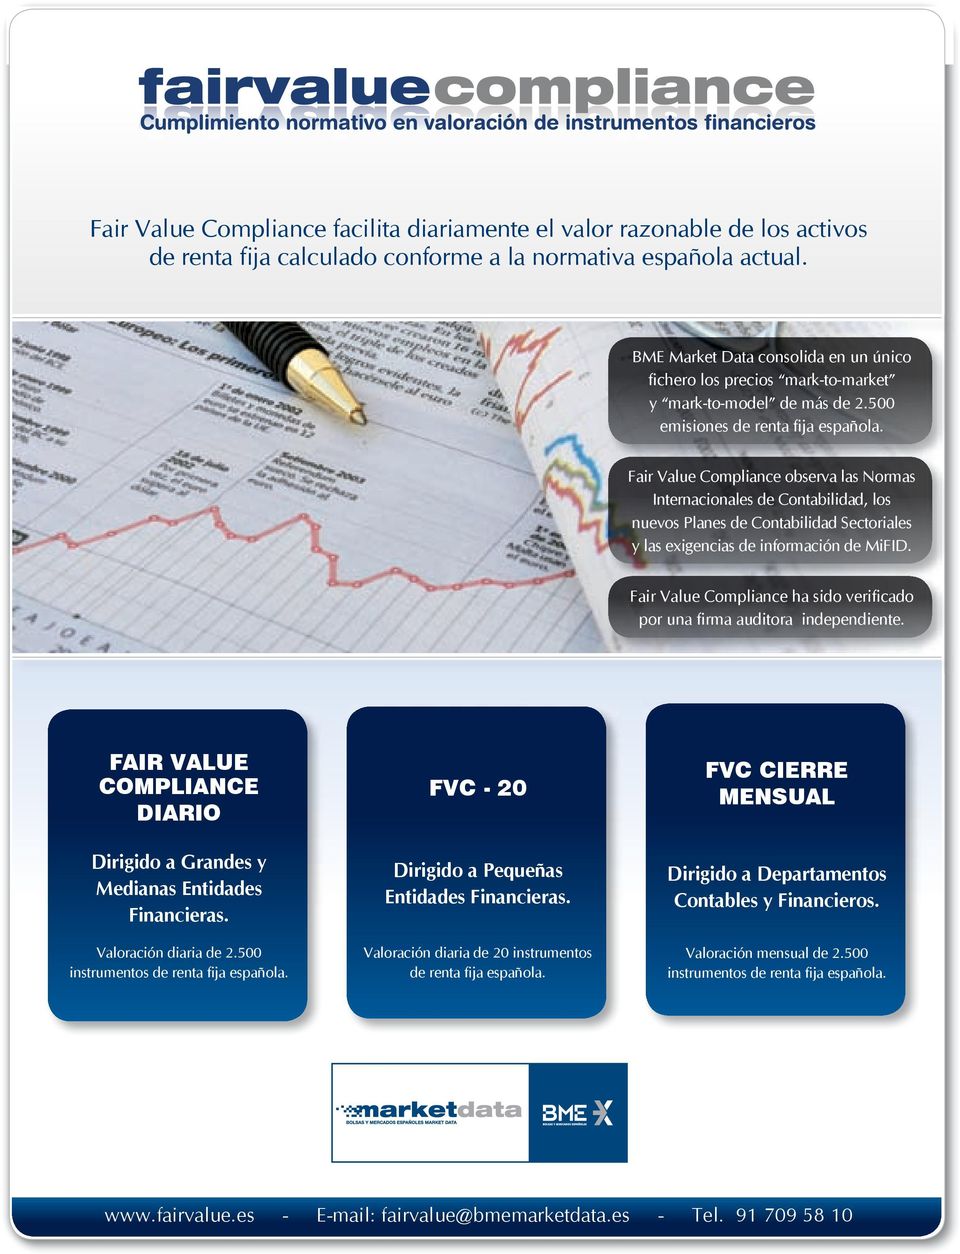 Fair Value Compliance observa las Normas Internacionales de Contabilidad, los nuevos Planes de Contabilidad Sectoriales y las exigencias de información de MiFID.